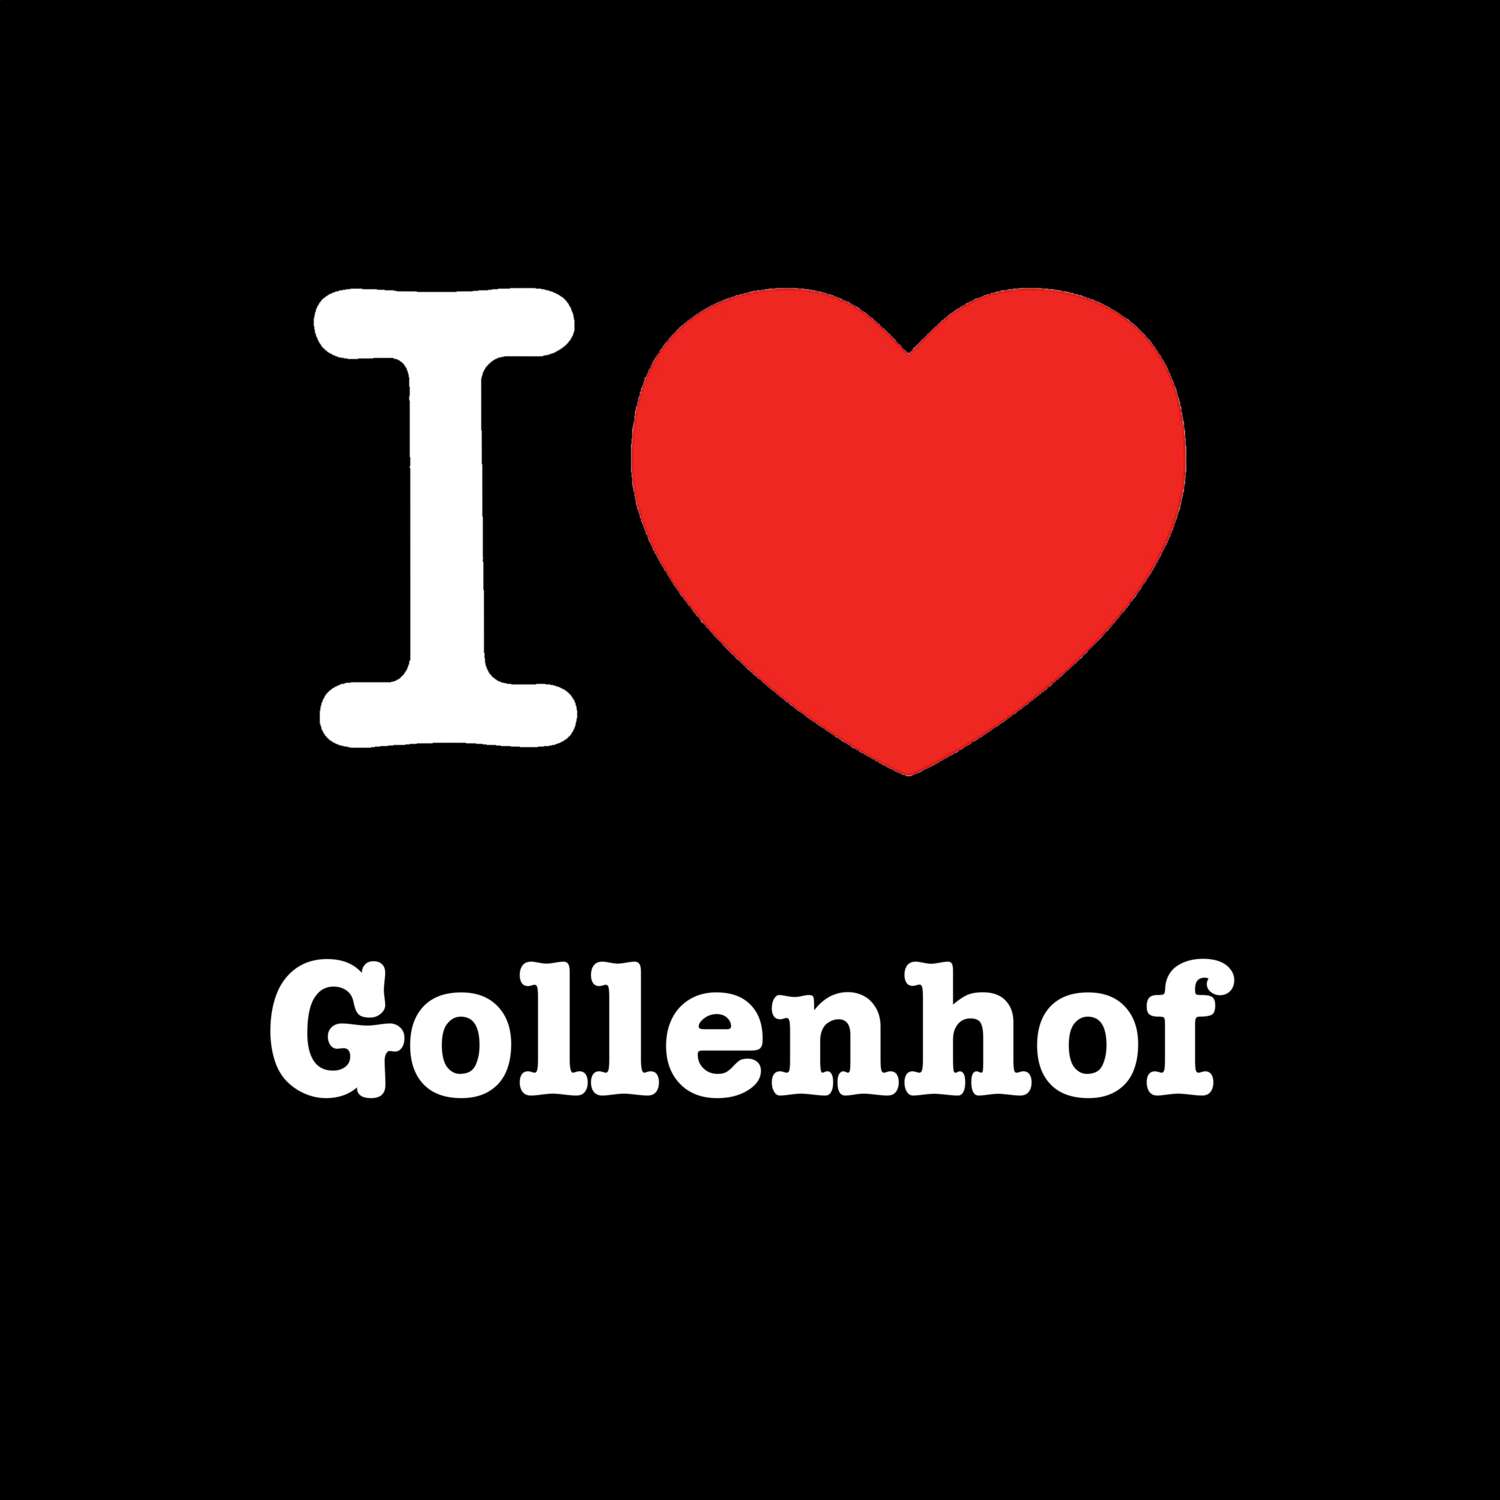 Gollenhof T-Shirt »I love«